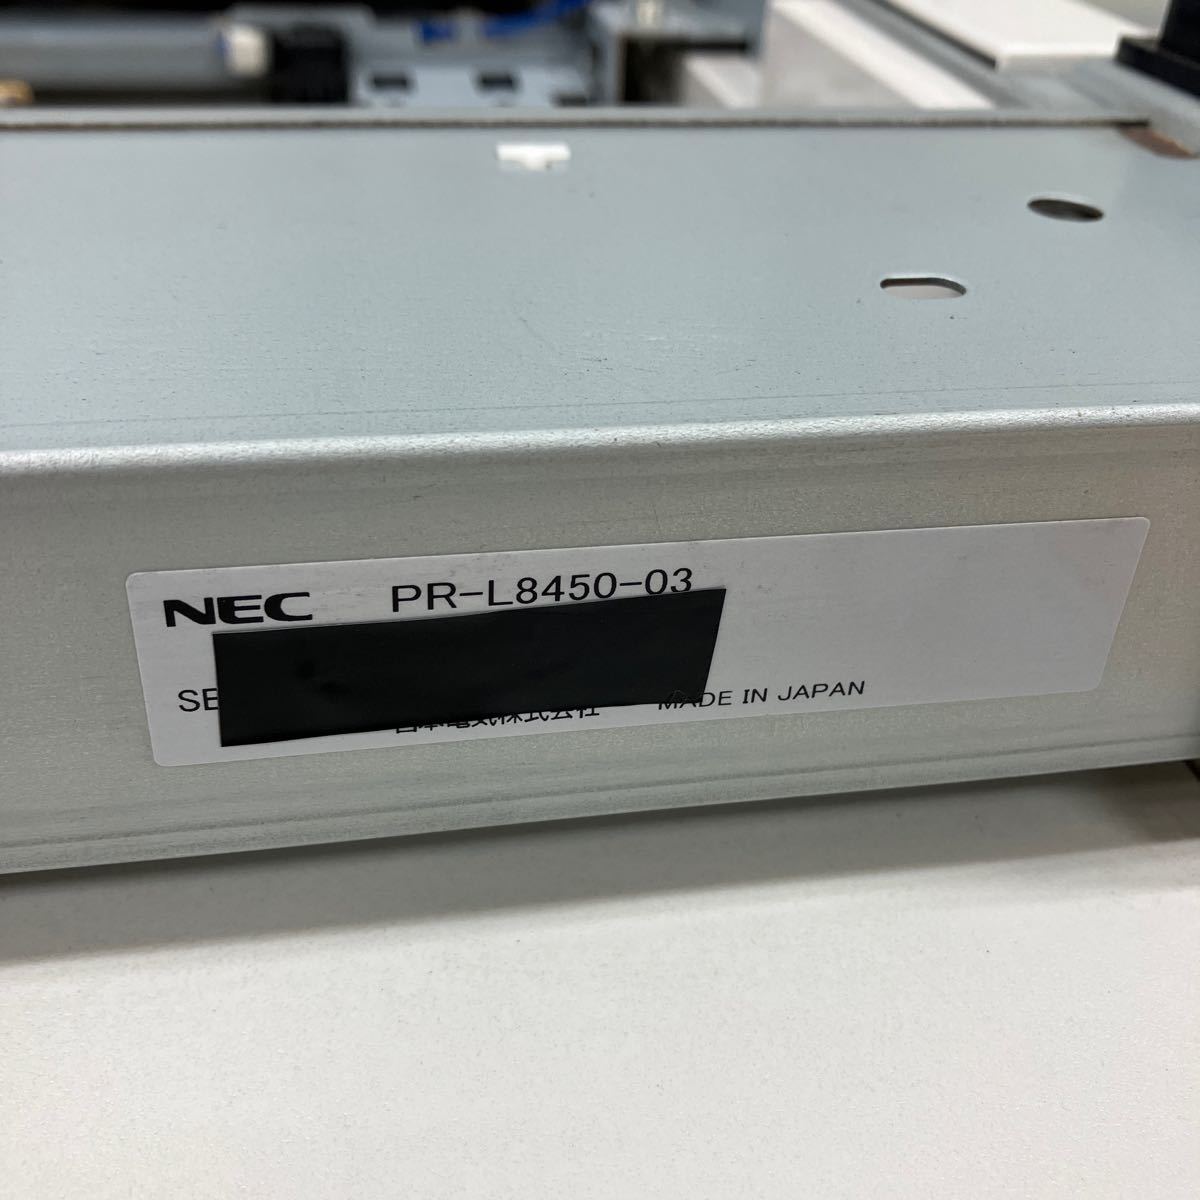 NEC PR-L8450-02 расширение ho pa расширение tray бумага механизм подачи 250 листов б/у 